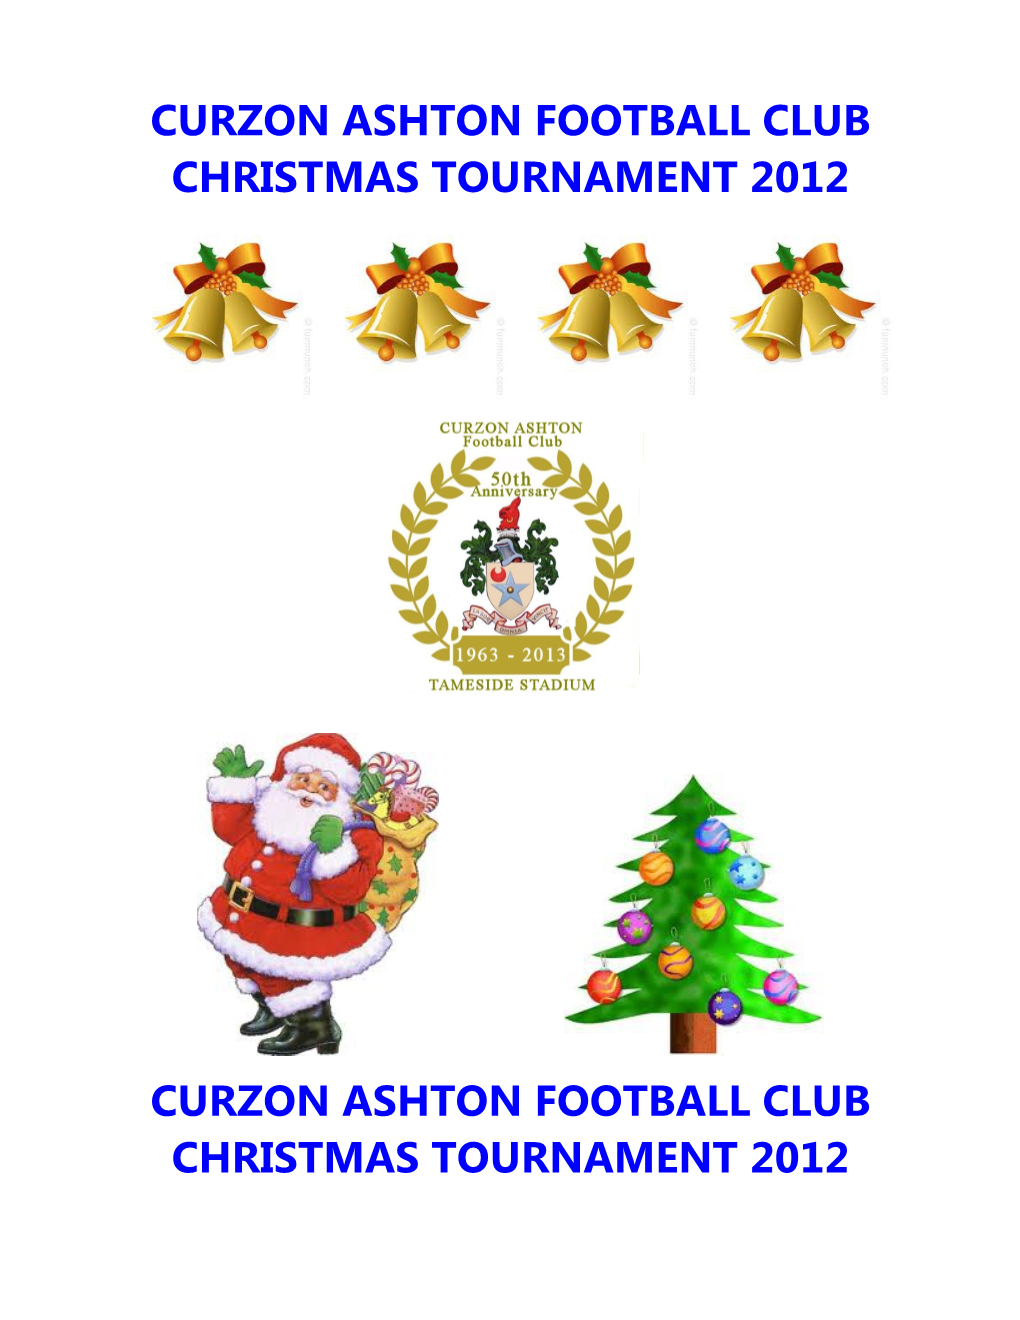 Curzon Ashton Football Club